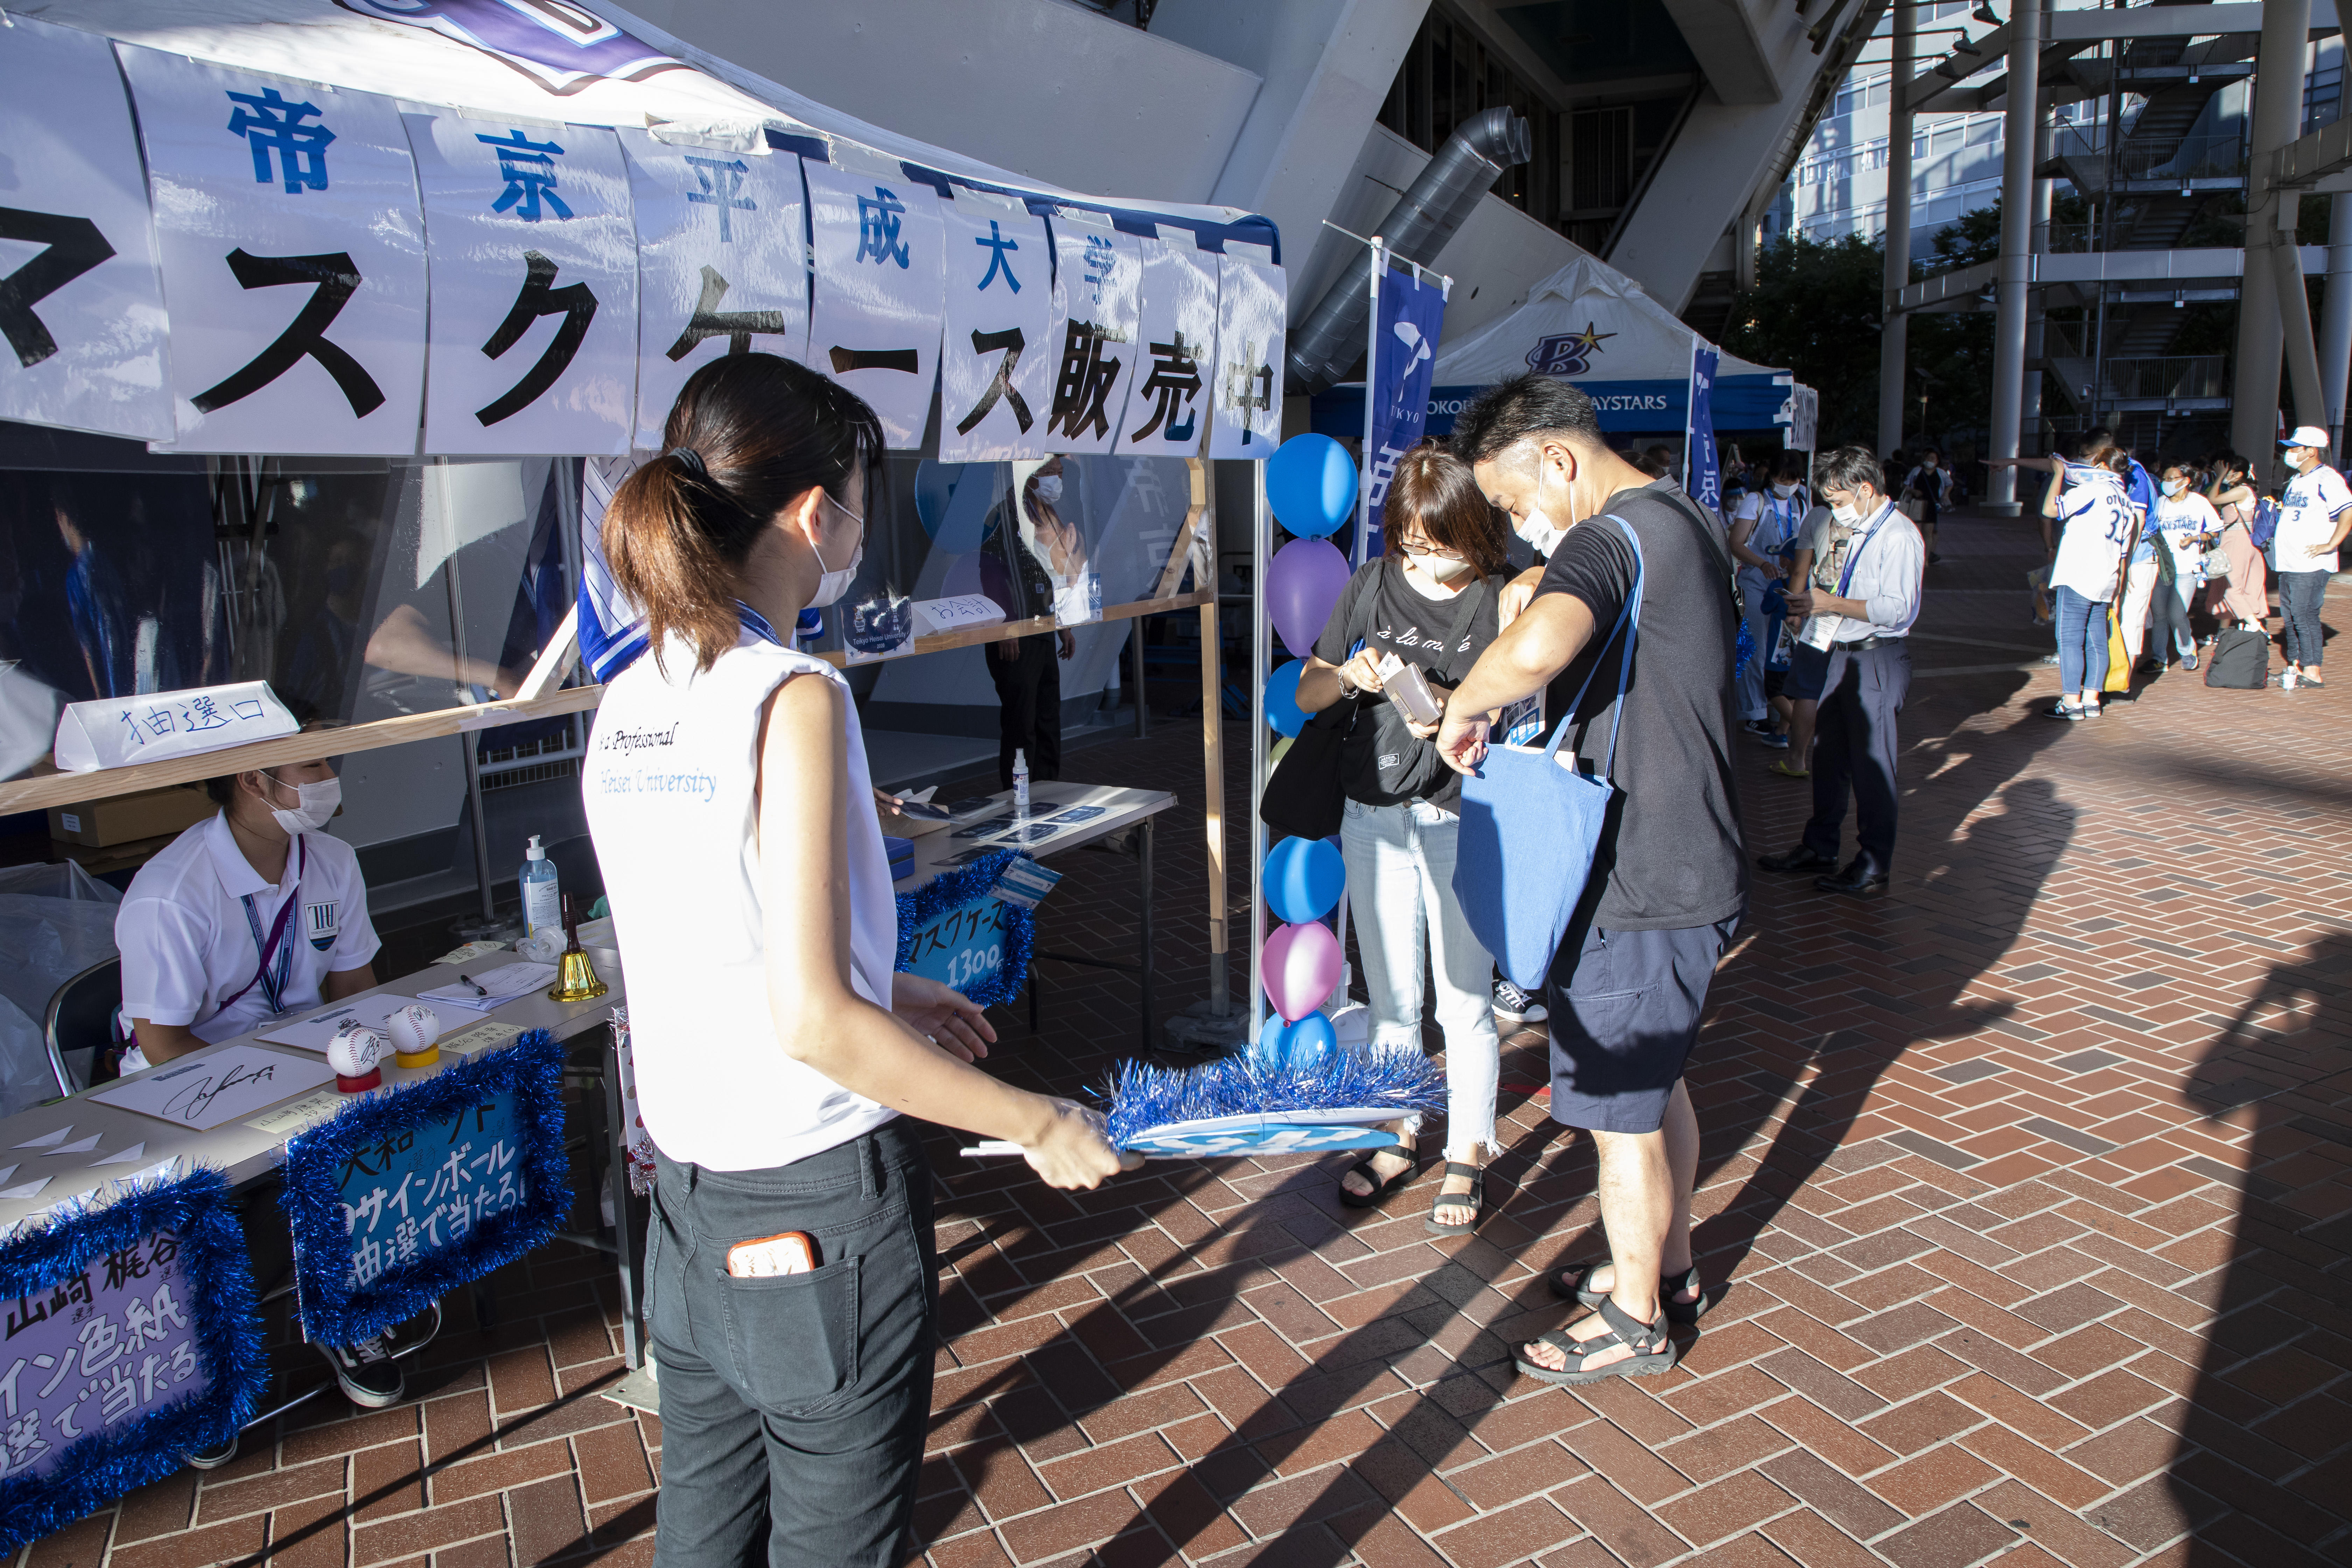 帝京平成大学が横浜DeNAベイスターズのホームゲームで「帝京平成大学デー」を実施 -- 学生がイベントを企画・運営